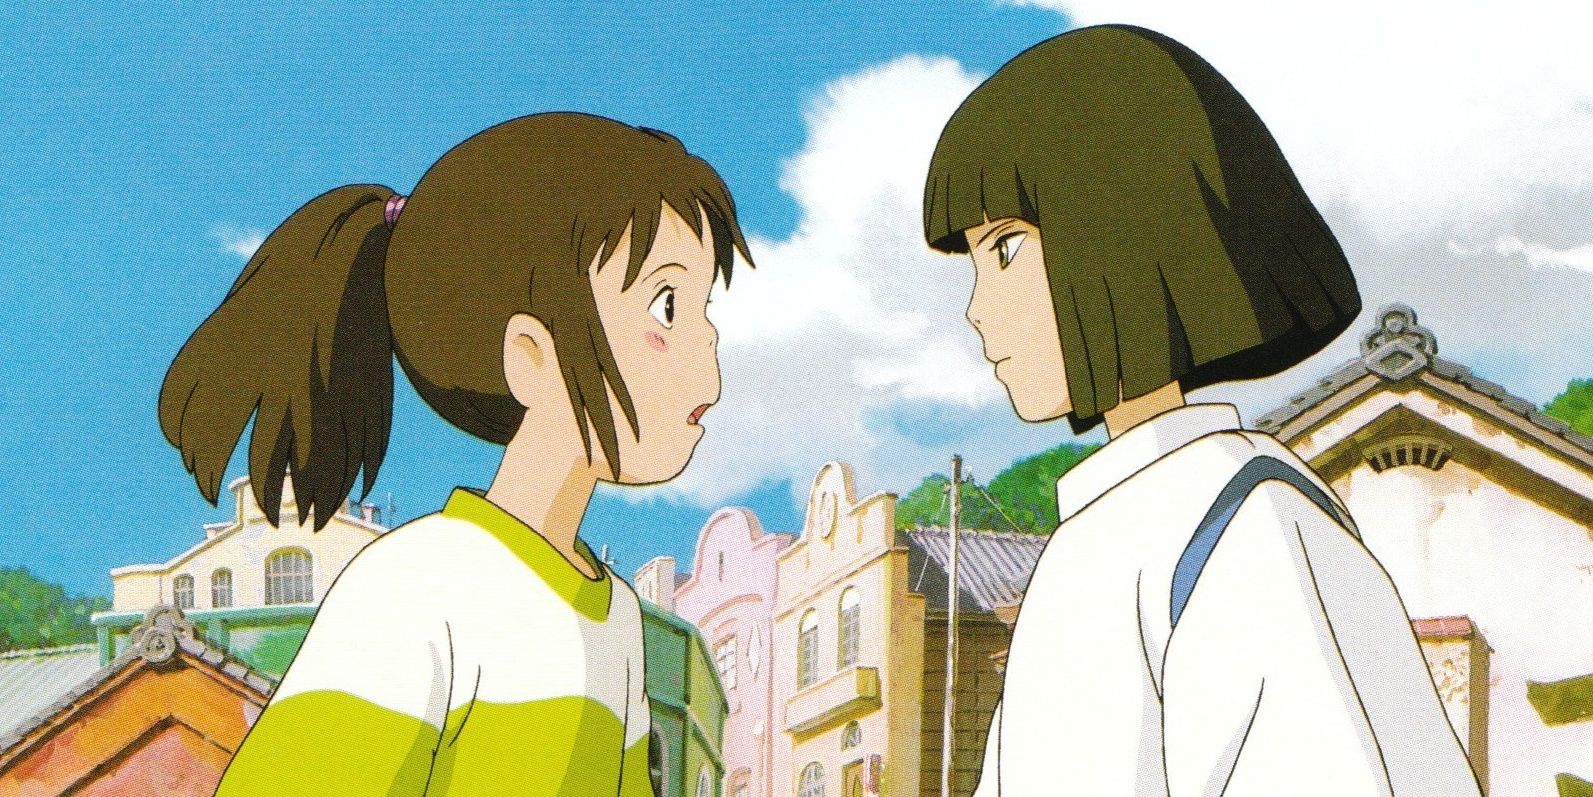 Chihiro and Haku argue in Spirited Away